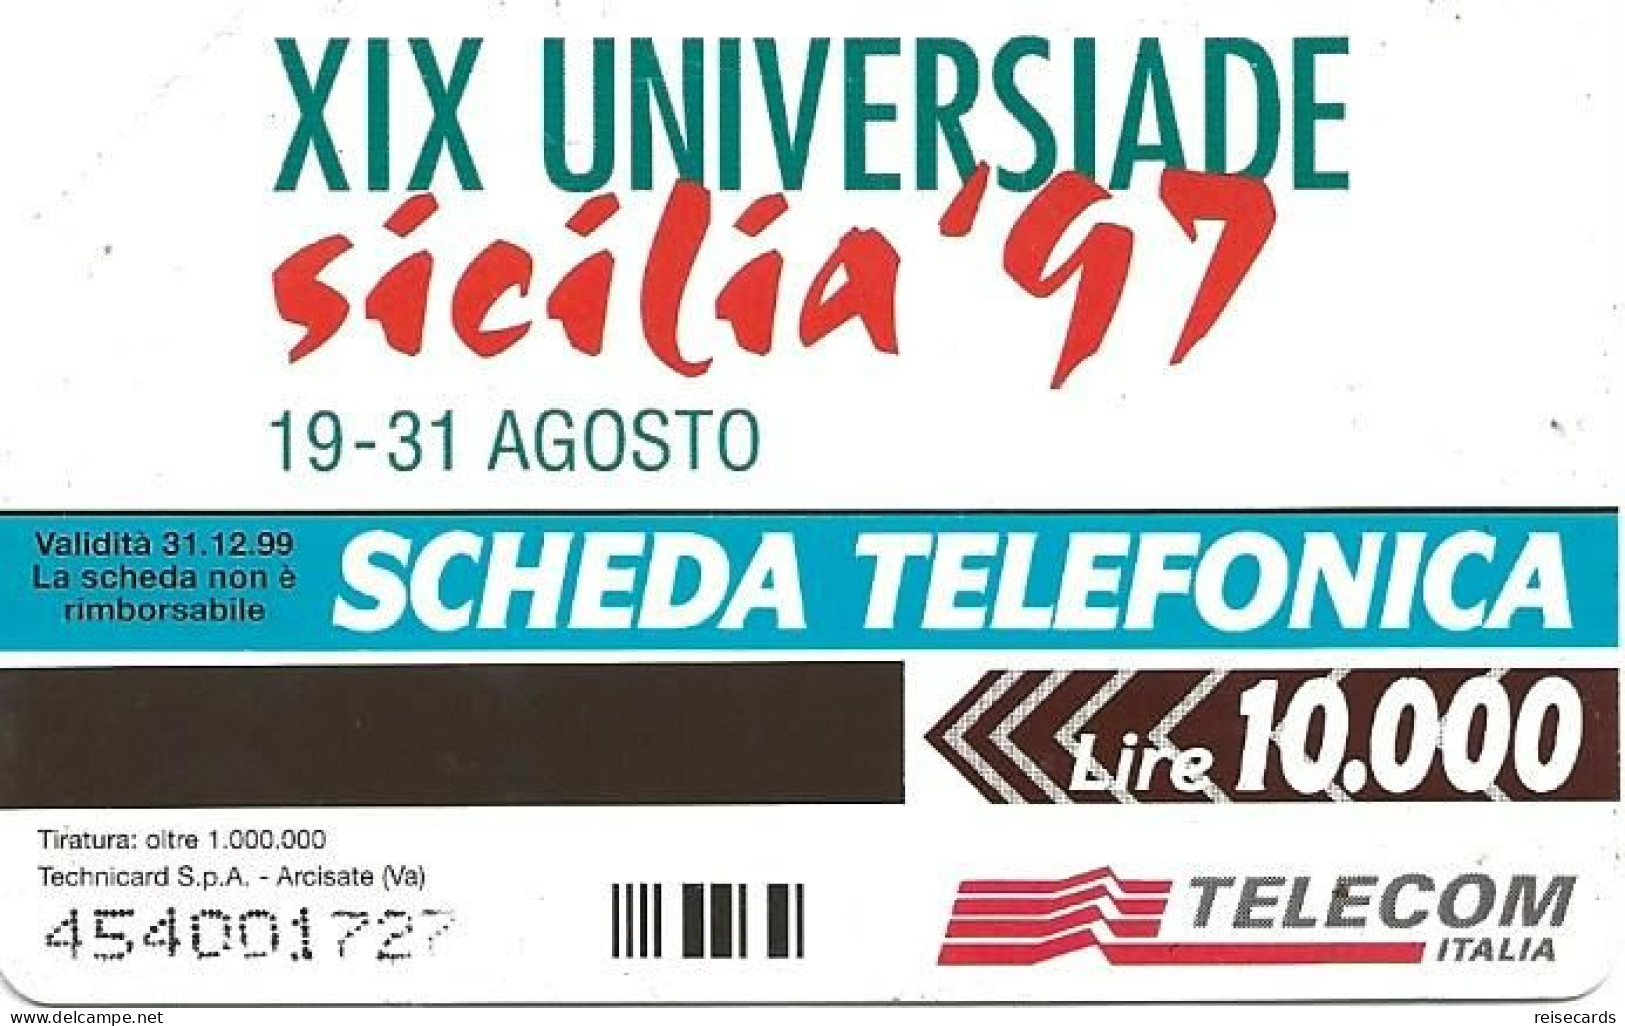 Italy: Telecom Italia - XIX Universiade Sicilia '97, Archimede - Öff. Werbe-TK